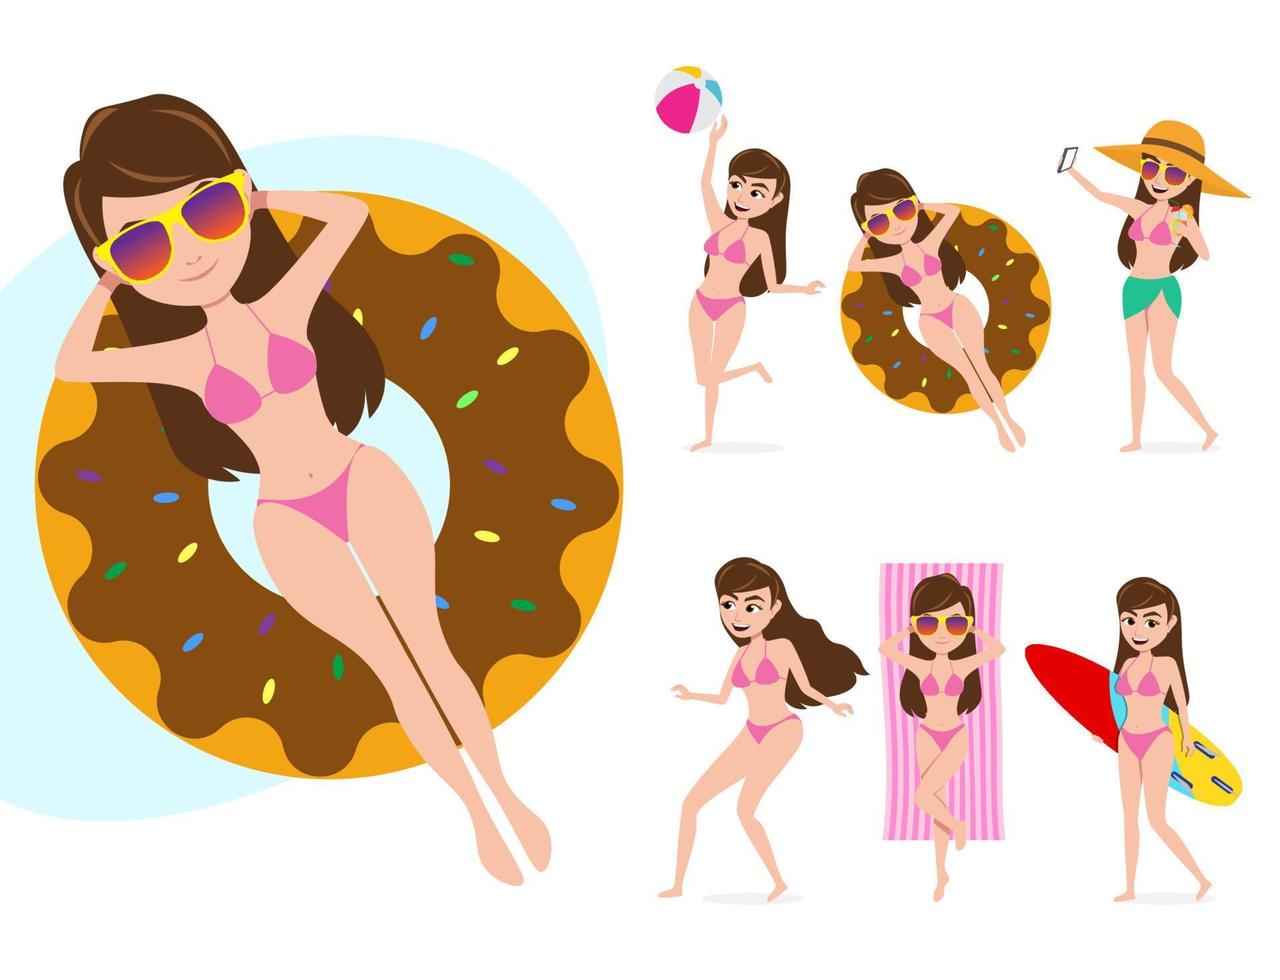 vrouwelijke zomer tekenset vector. vrouwelijke personages in verschillende zomeractiviteiten zoals zweven met floater donuts, strandbal spelen, zonnebaden en surfen geïsoleerd op een witte achtergrond. vector